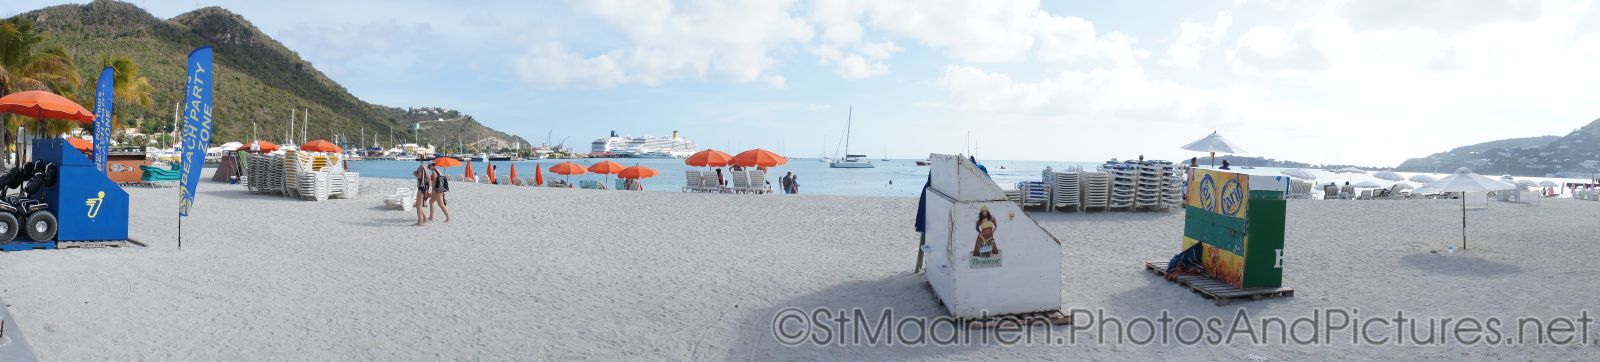 Panoramic photo of beach in Philipsburg St Maarten.jpg
